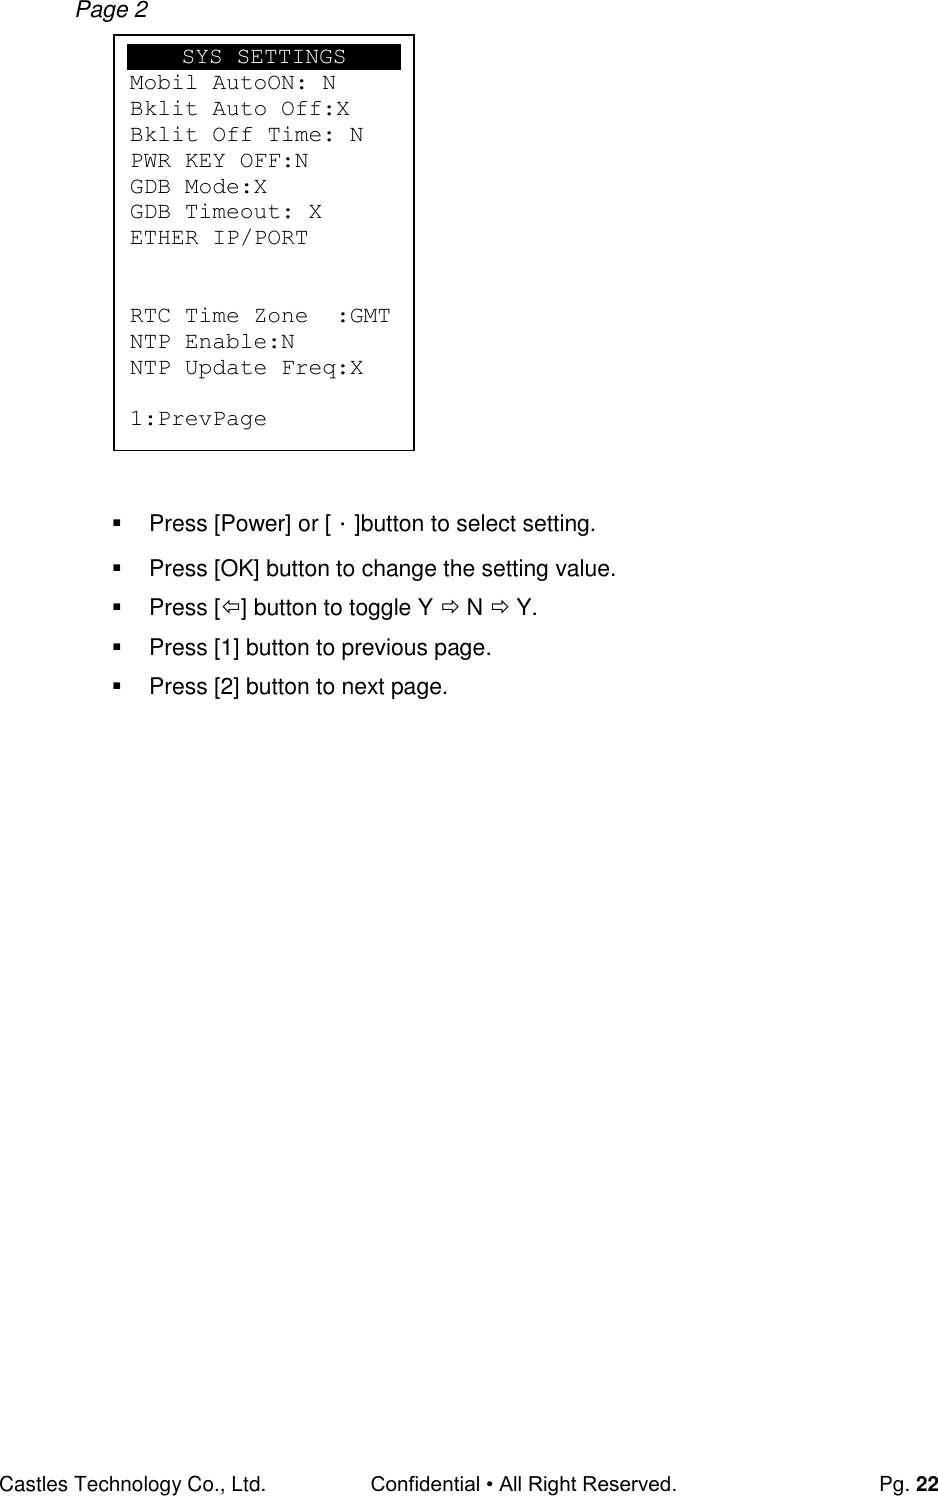 gimp 2.8 22 user manual pdf